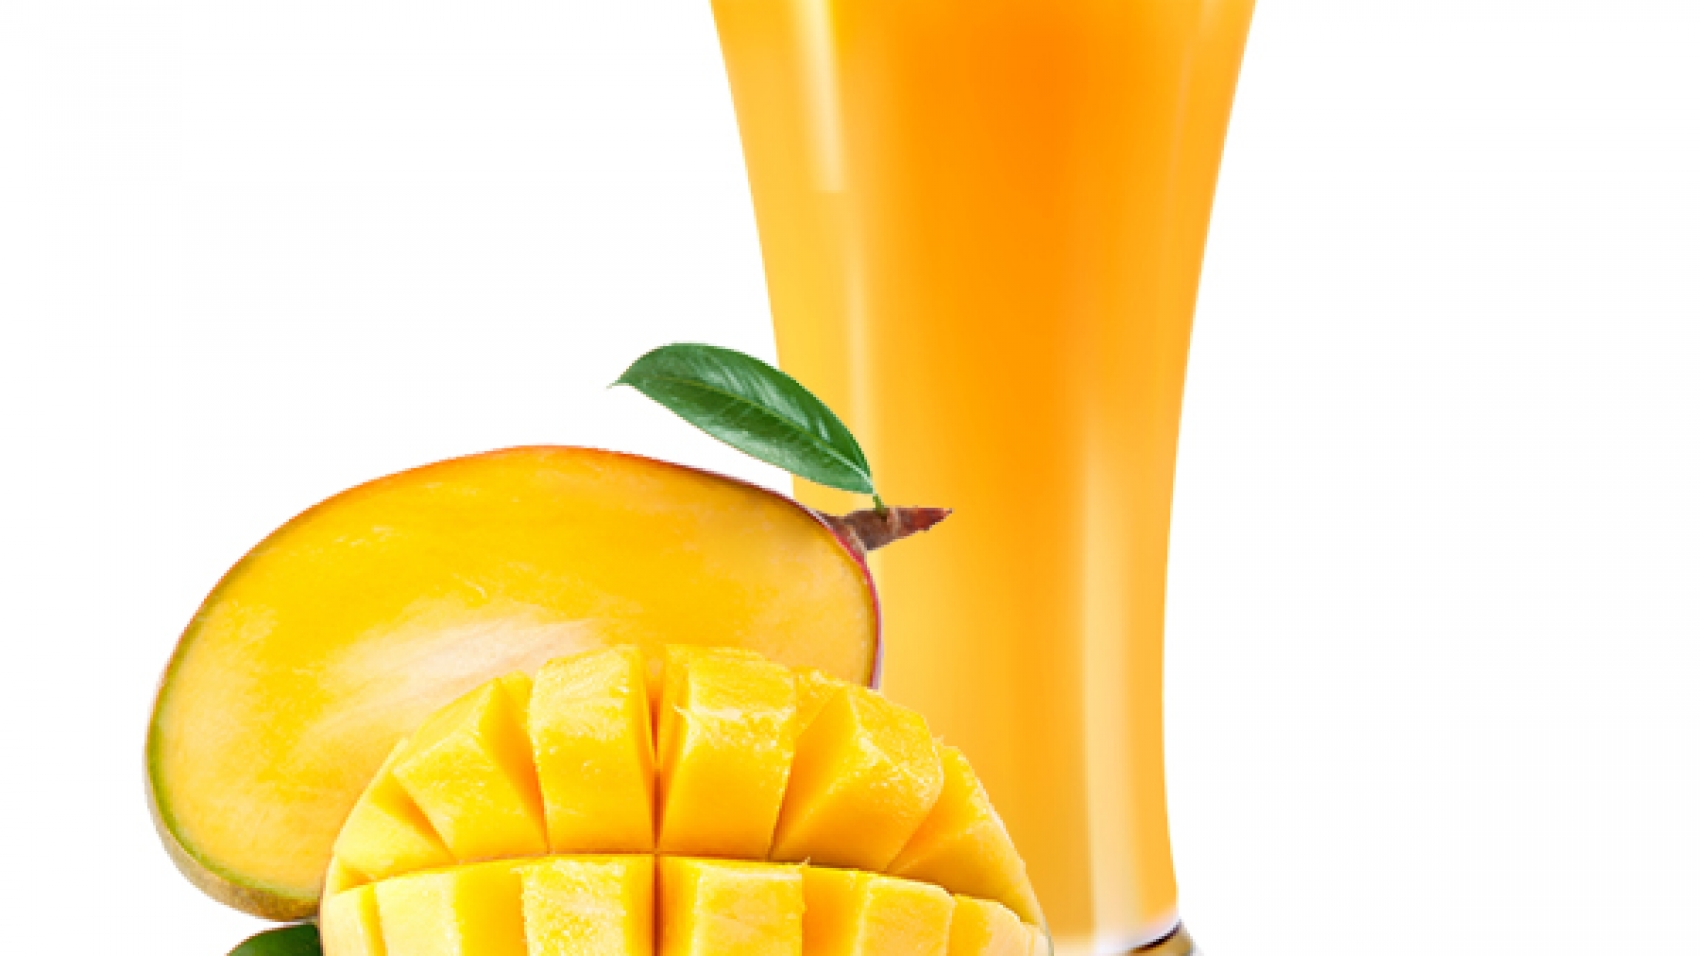 mango-juice